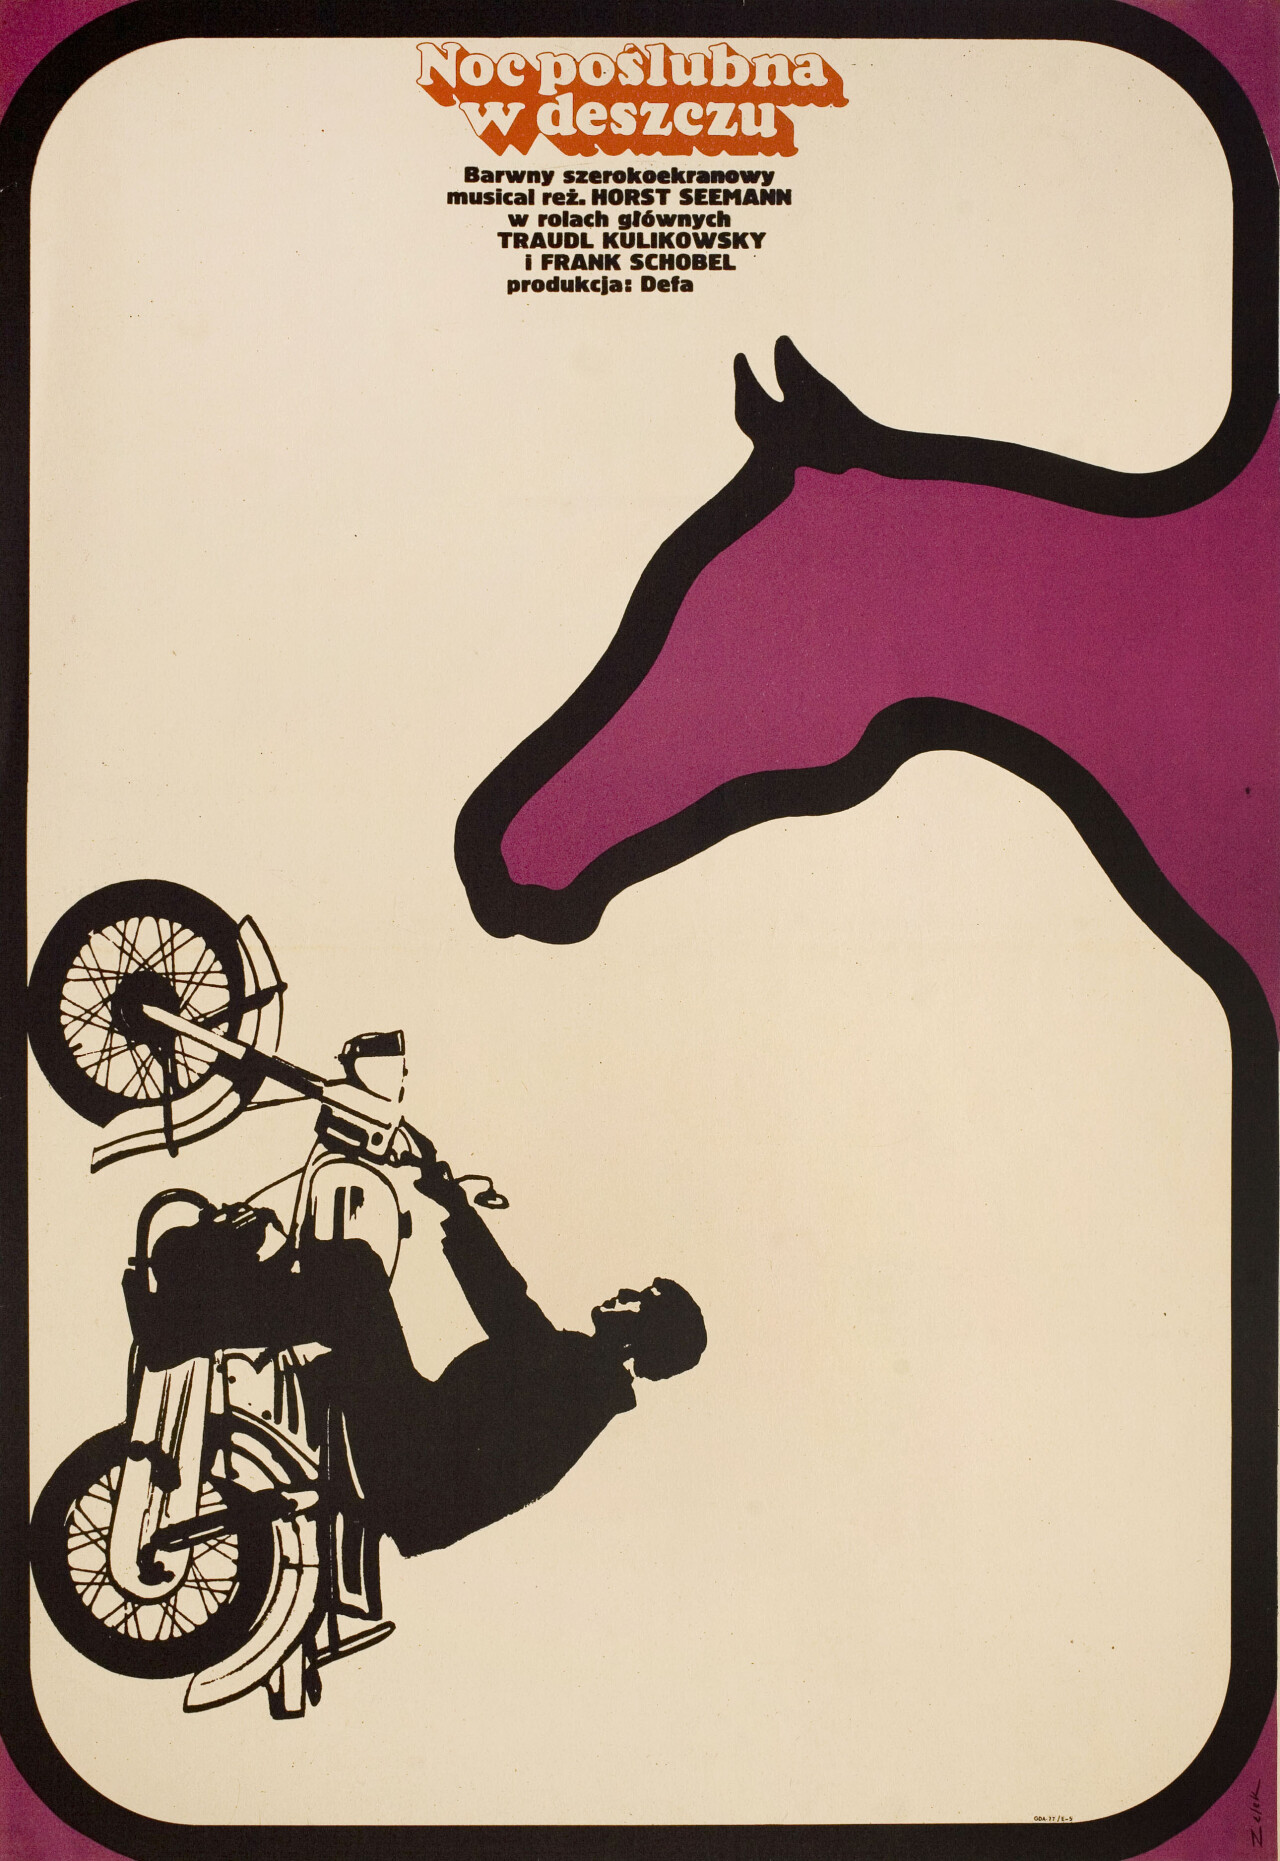 Свадебная ночь под дождем (Wedding Night in the Rain, 1967), режиссёр Хорст Зееман, польский постер к фильму, автор Бронислав Зелек (графический дизайн, 1970 год)